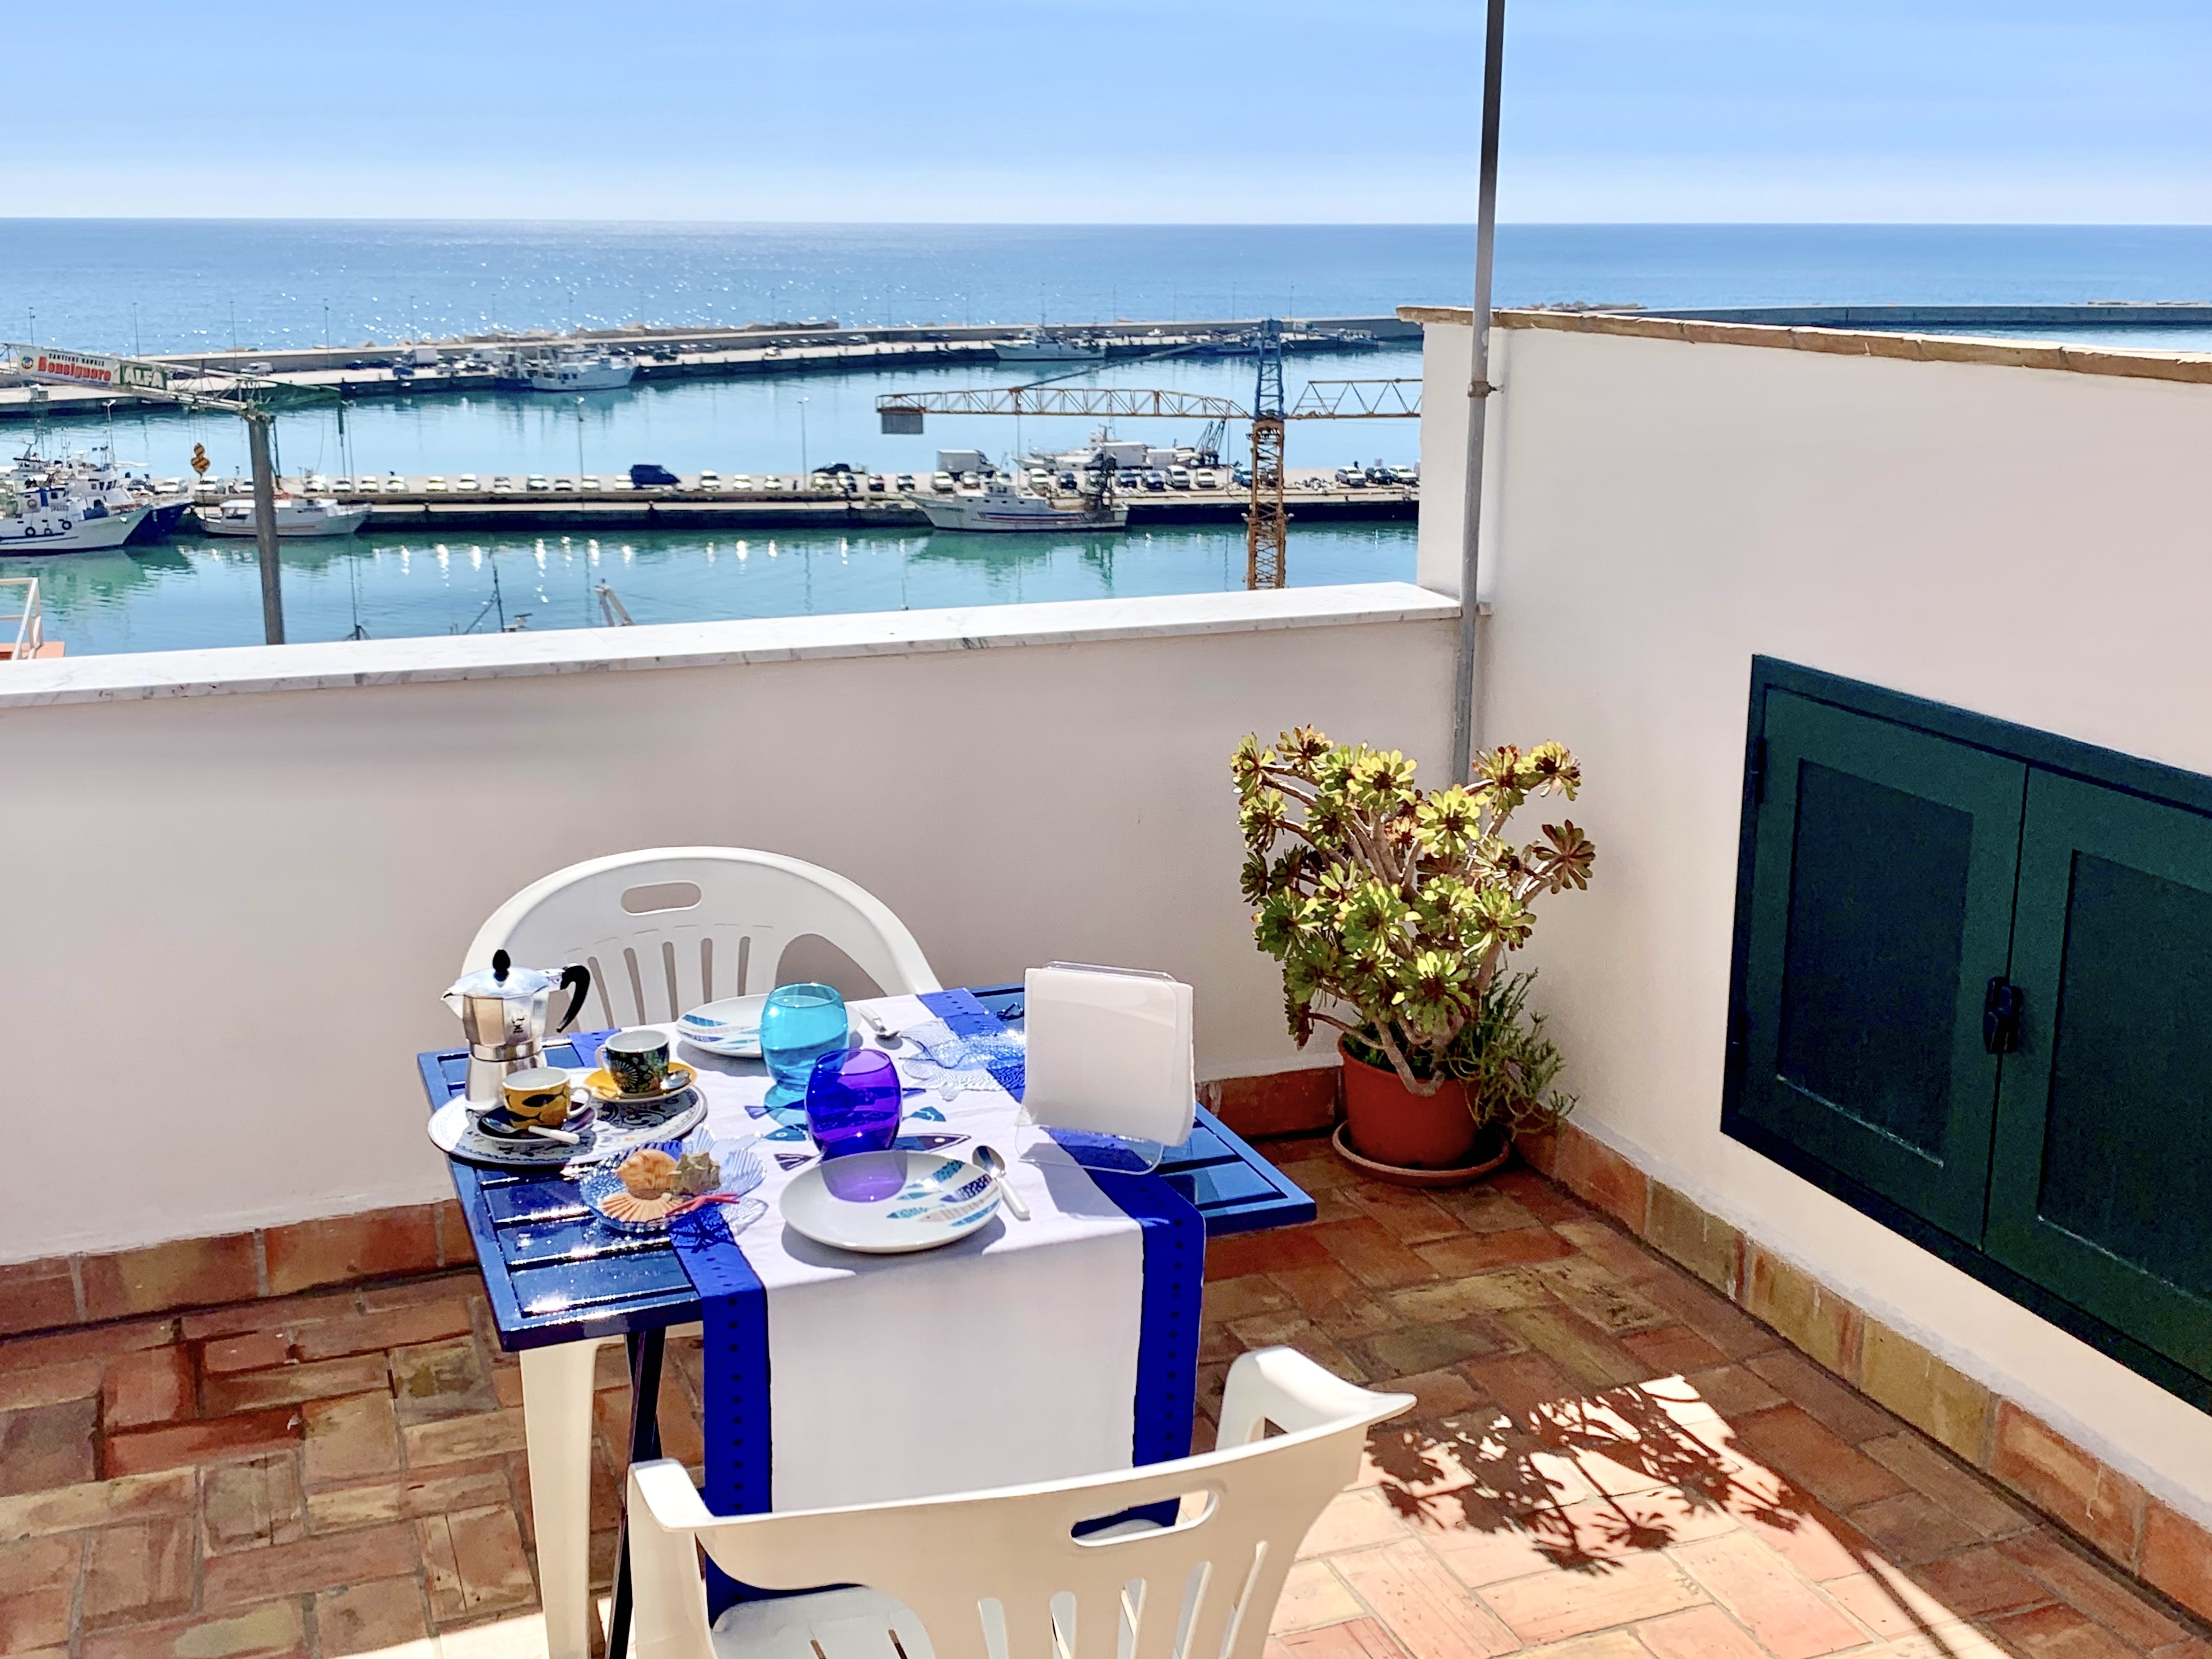 La casa del Pescatore - Case vacanze in affitto a Sciacca, Sicilia, Italia  - Airbnb